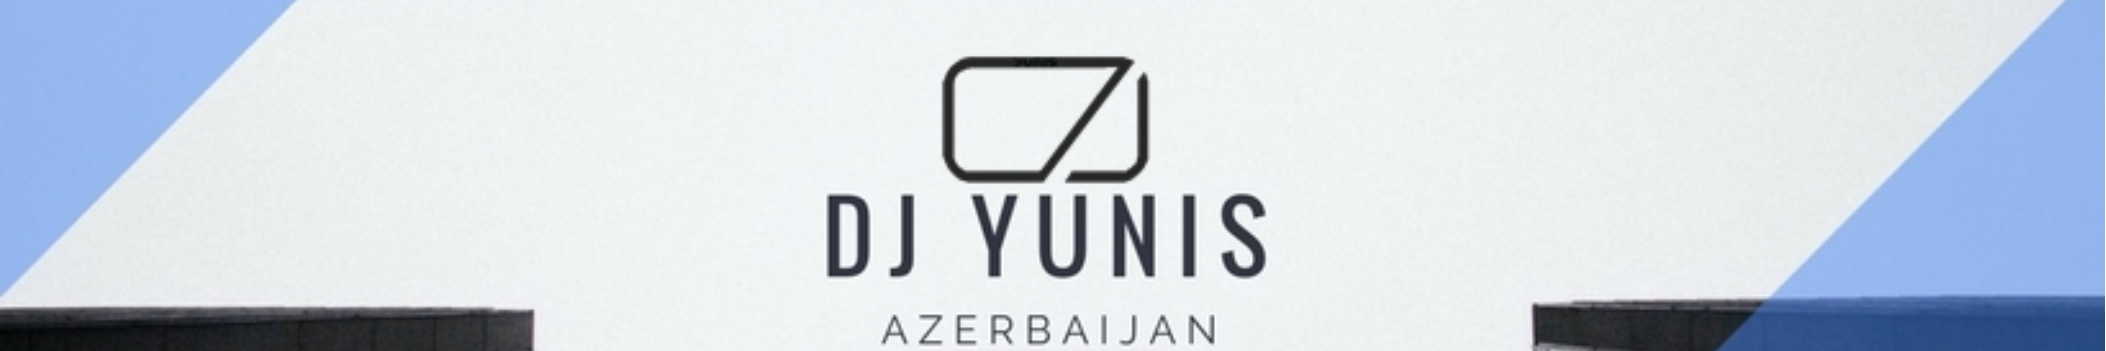 DJ Yunis